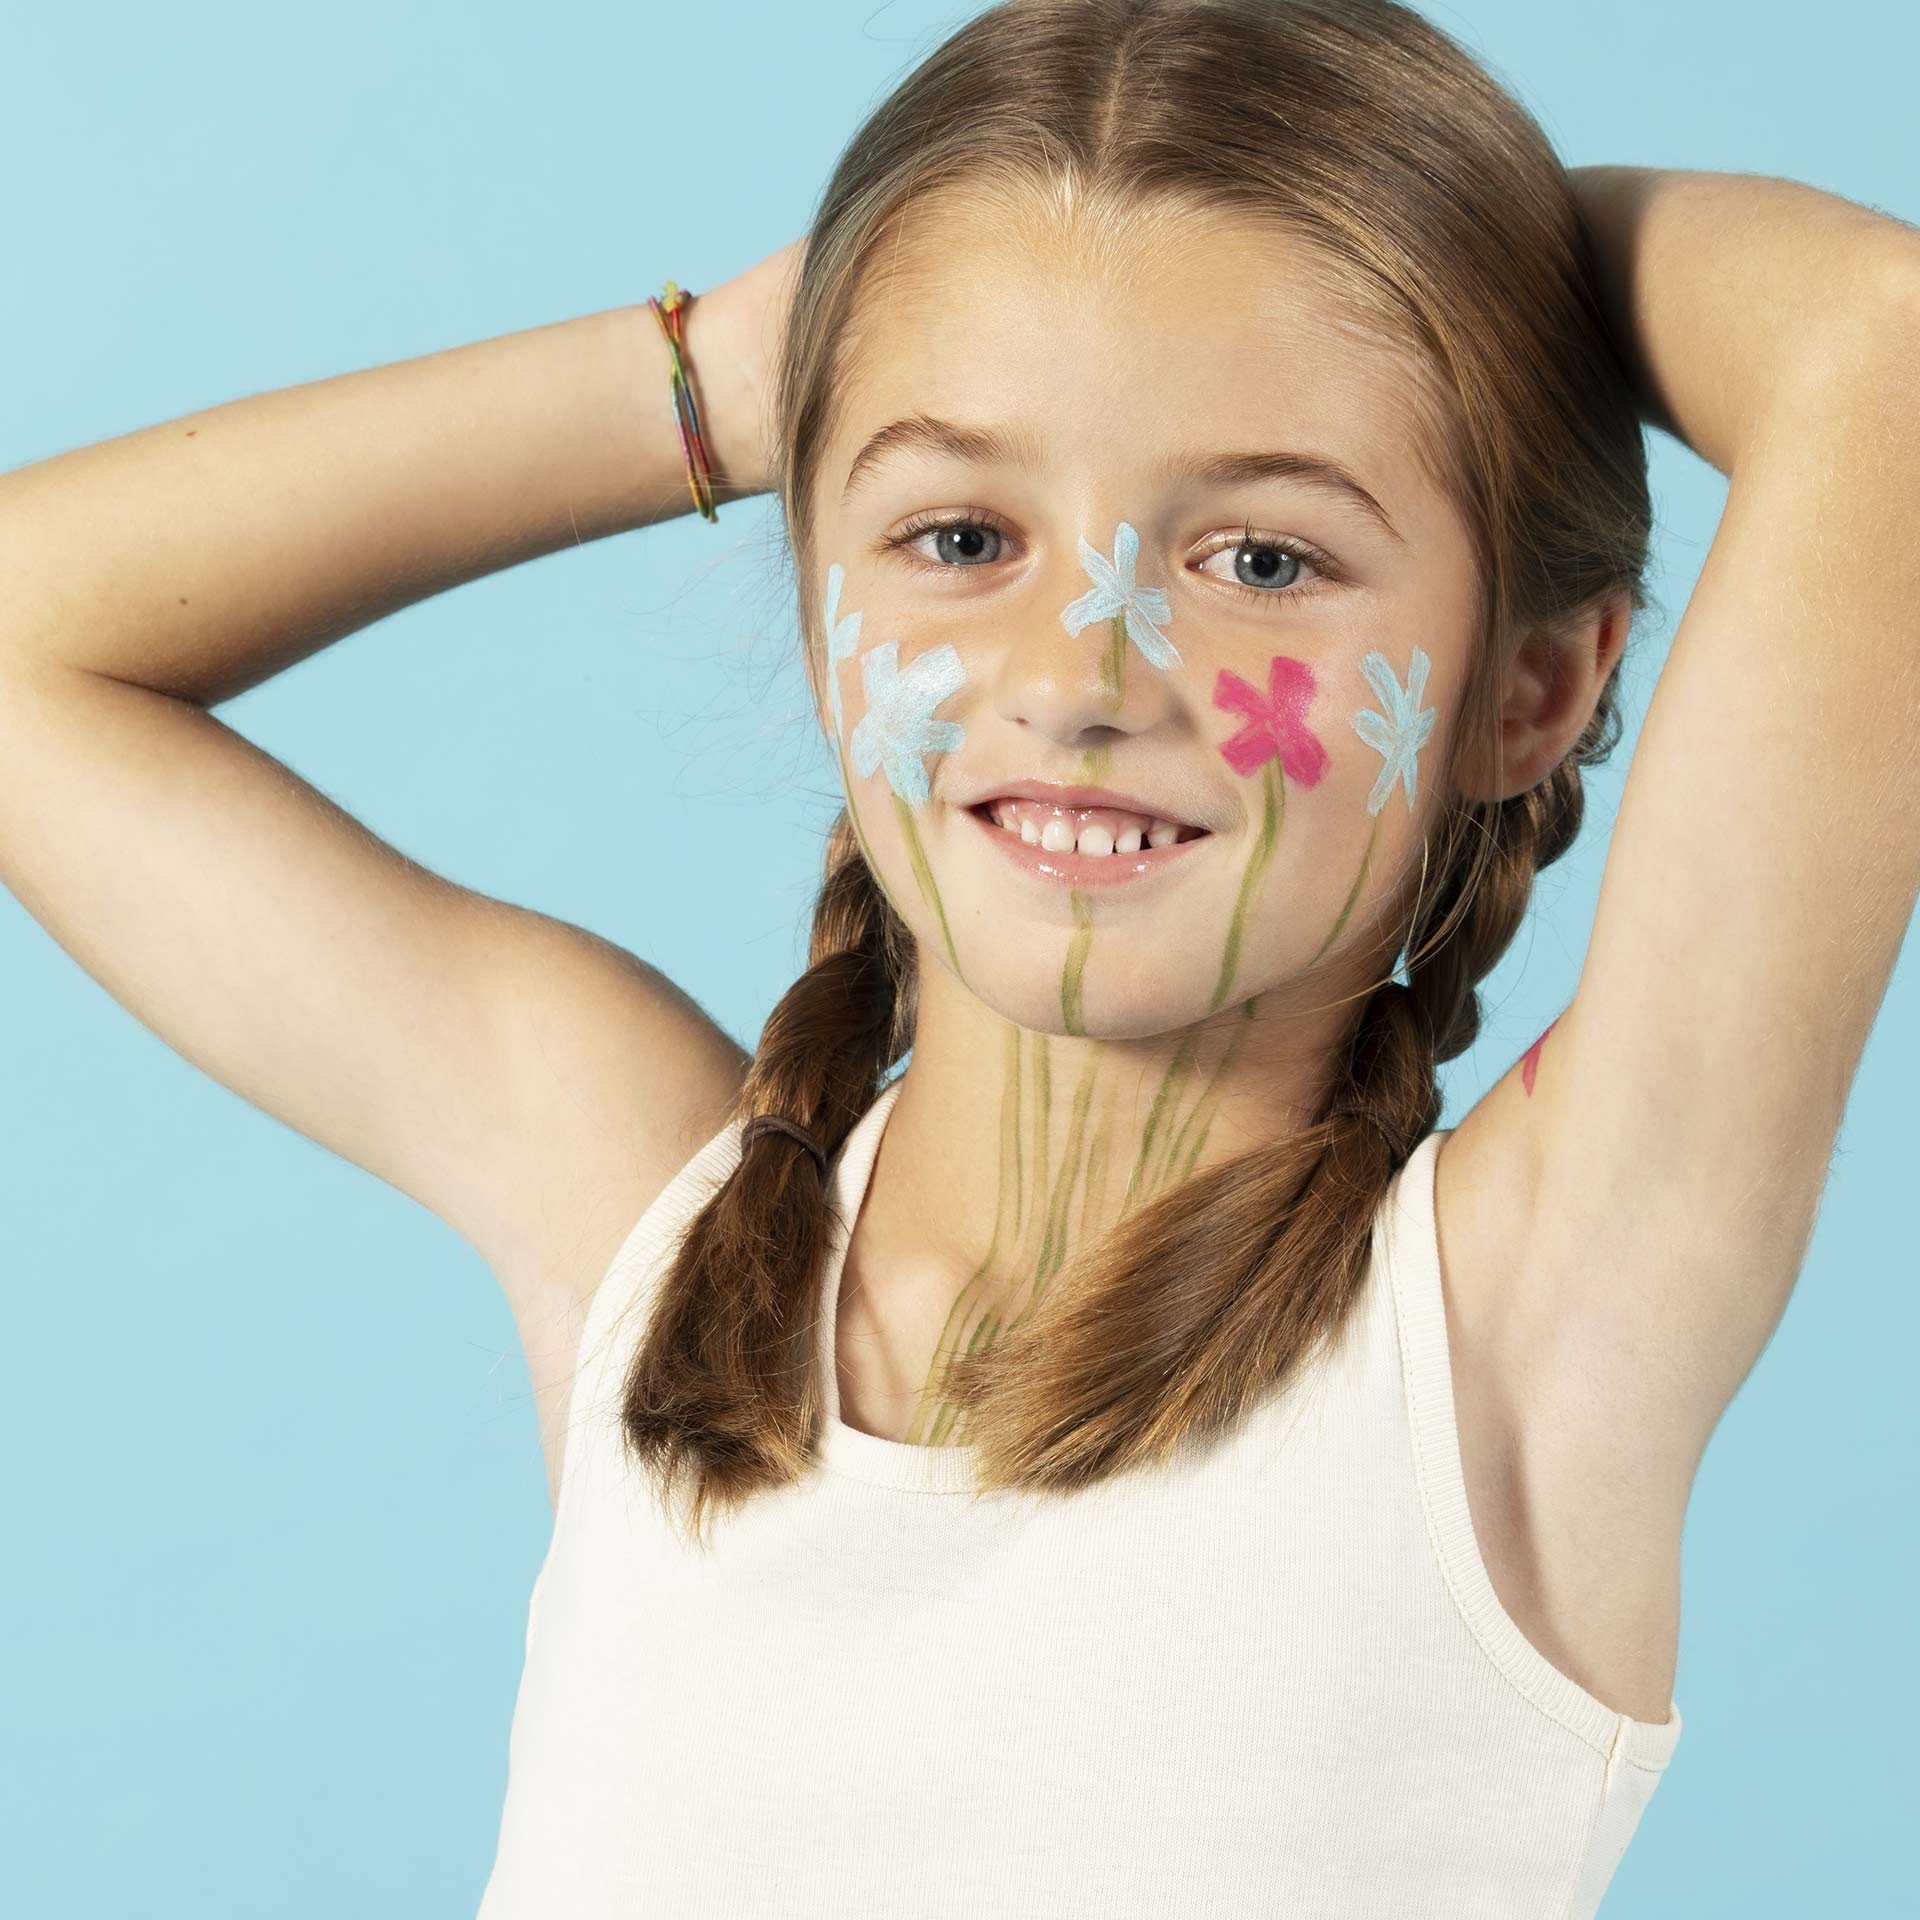 maquillage enfant petite fille dessin sur peau bleu nailmatic kids